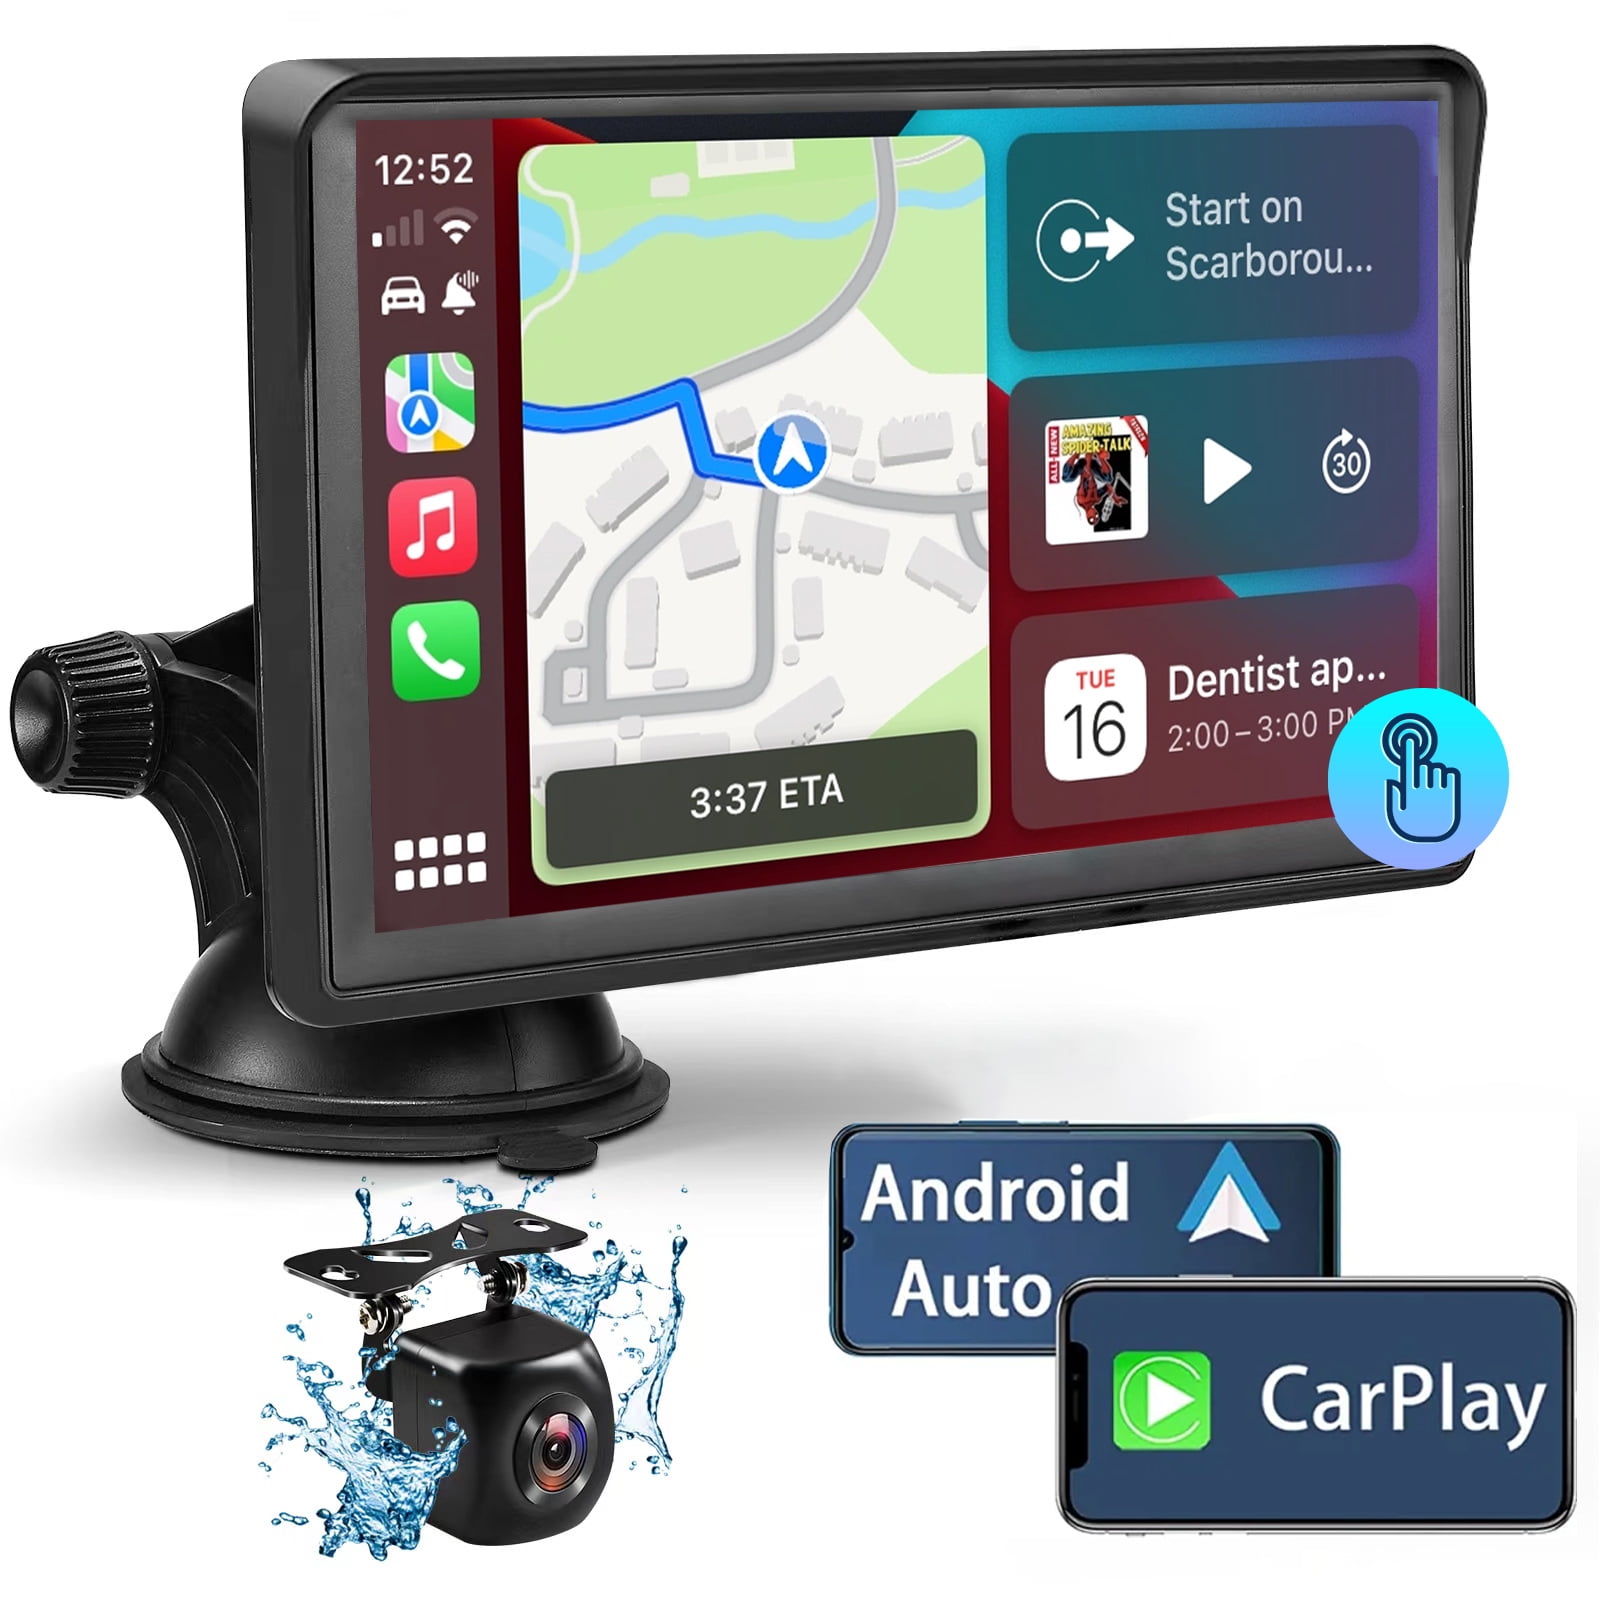 Radio Carro Aiwa Pantalla 7' Android Auto Carplay AIWA